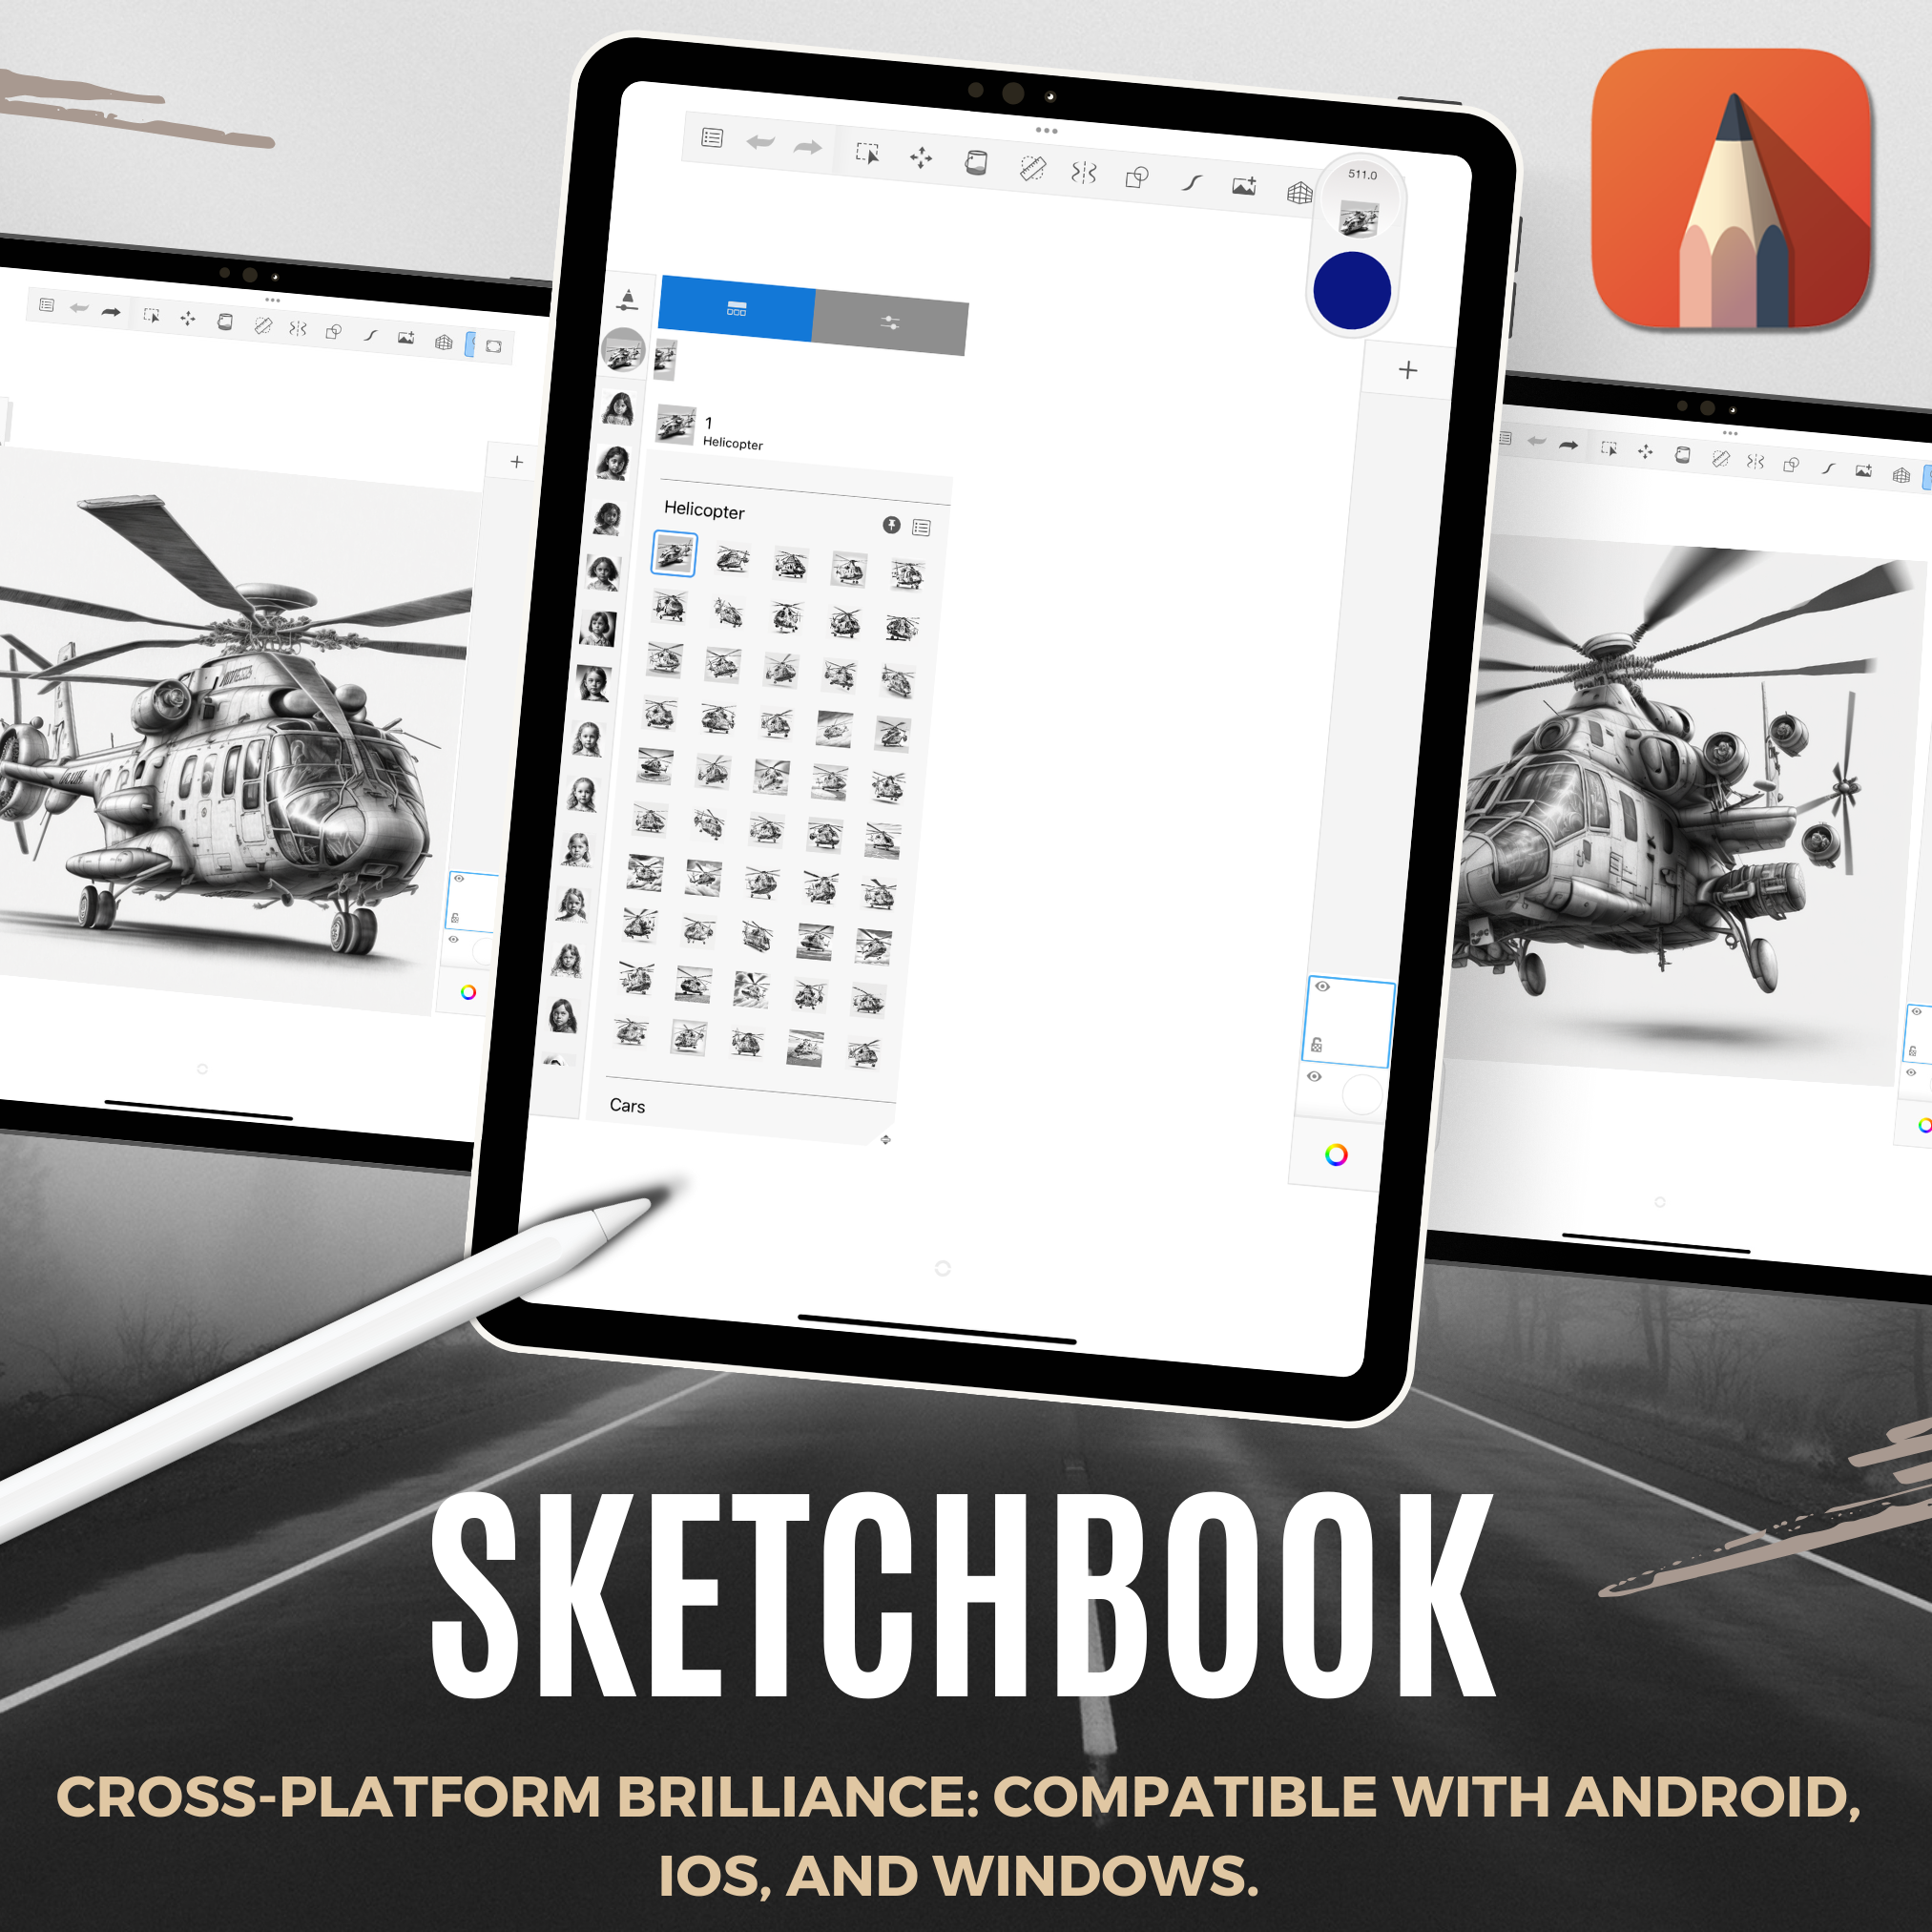 Digitale Designsammlung „Helikopter“: 50 Procreate- und Skizzenbuchbilder